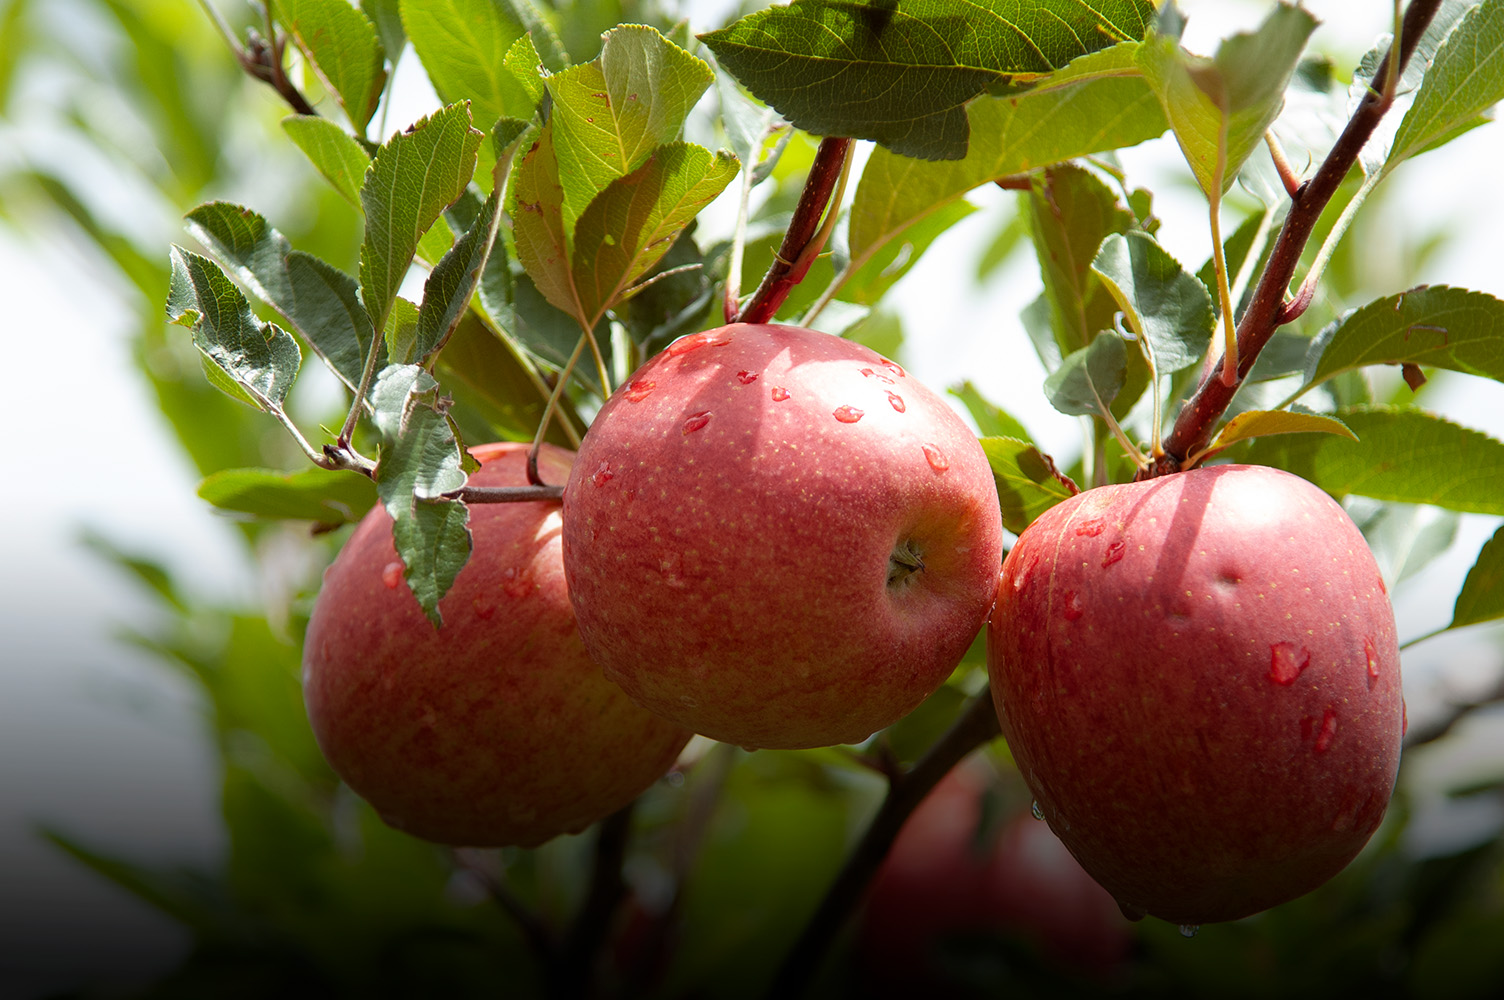 Evento em Fraiburgo marca o início da colheita da maçã em SC